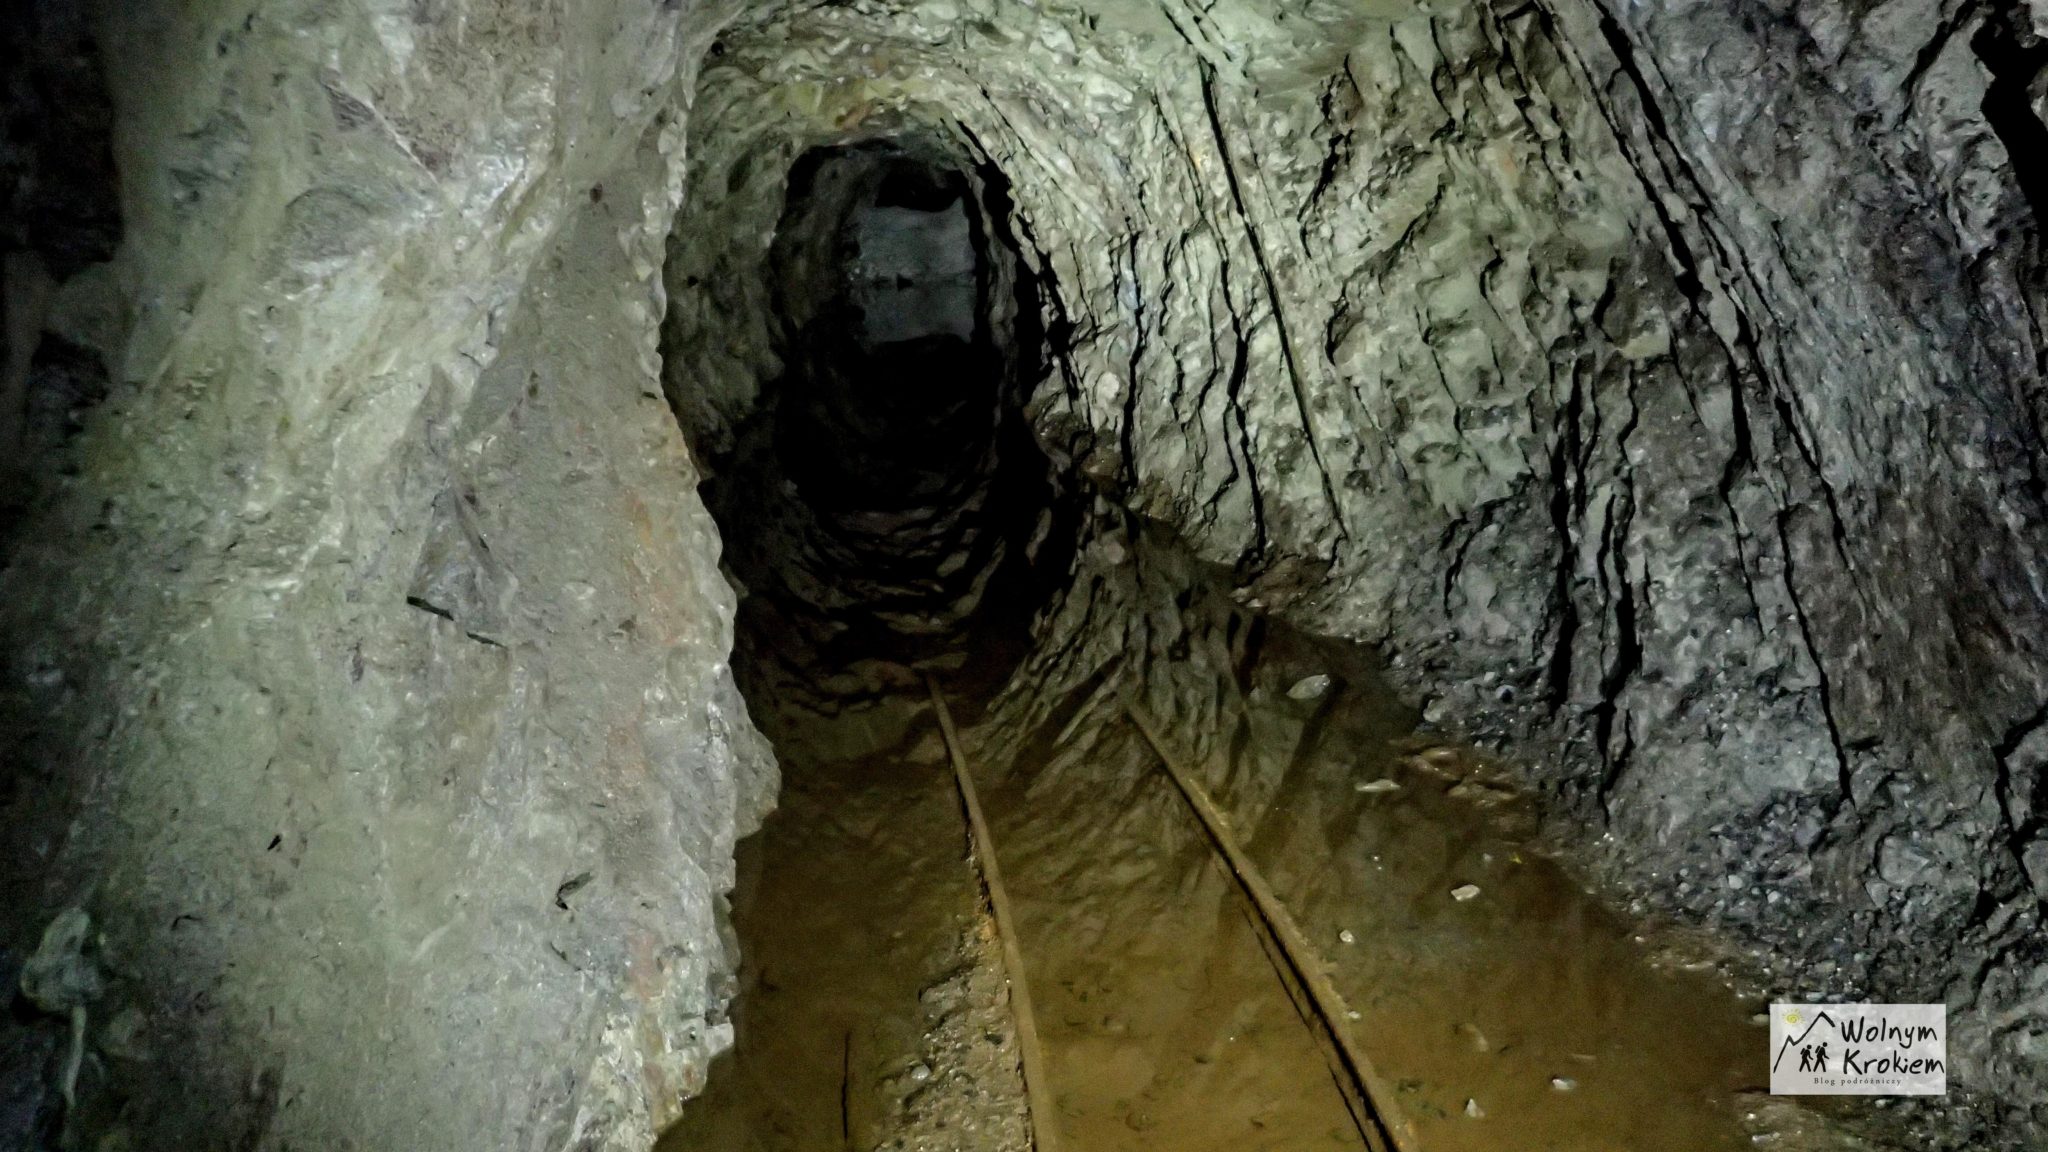 Kopalnia uranu "Podgórze" w Kowarach - ekstremalna trasa w podziemiach sztolni